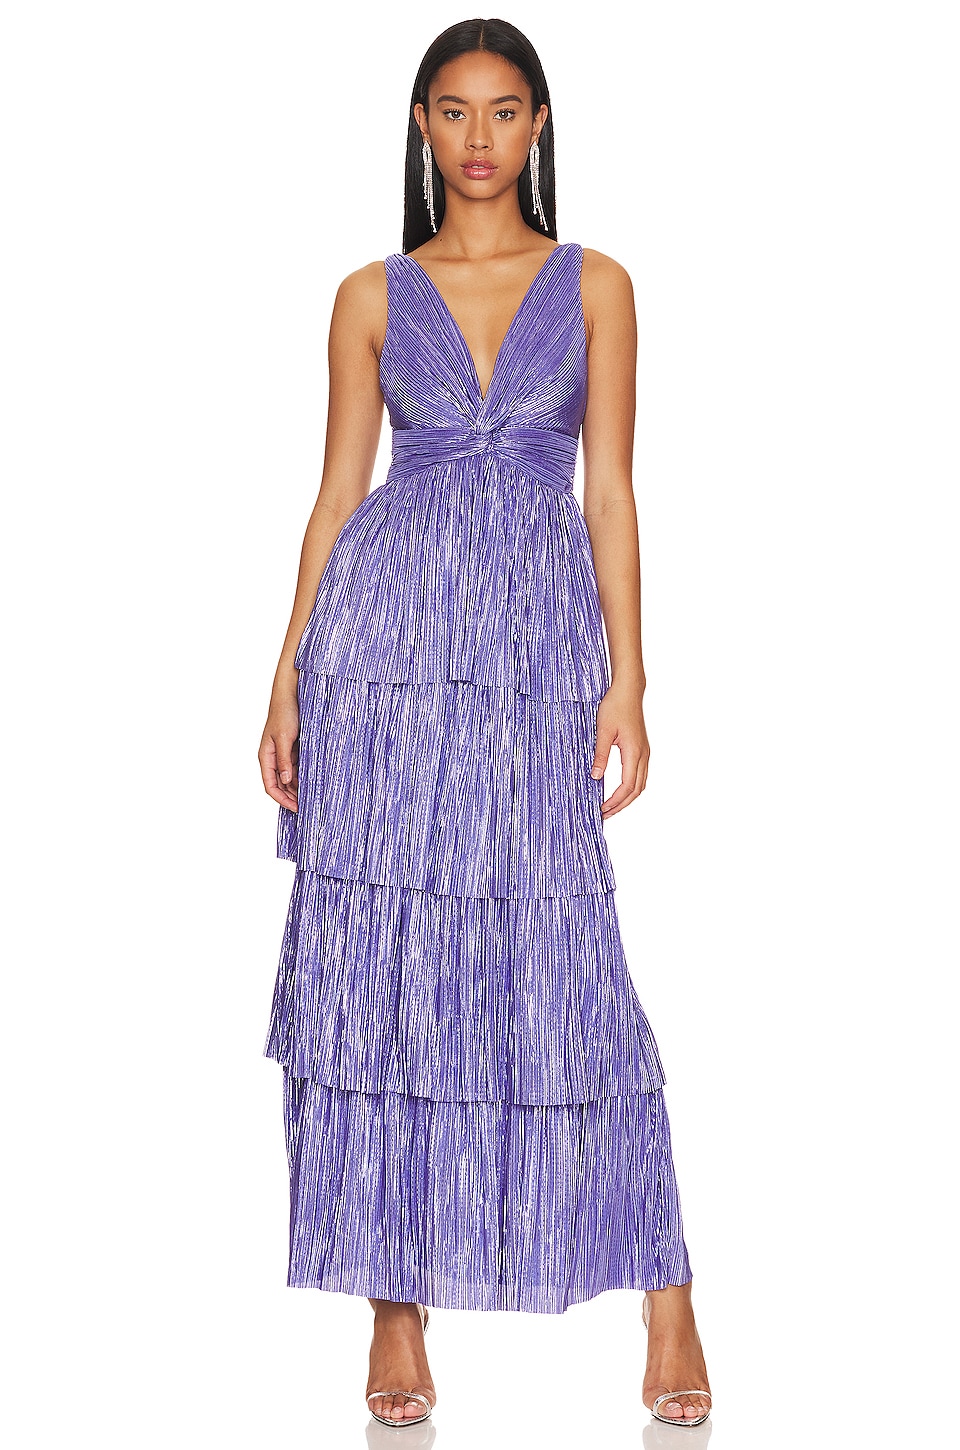 Exclusive Rich Designer Print Lavender Color Gown - Clothsvi